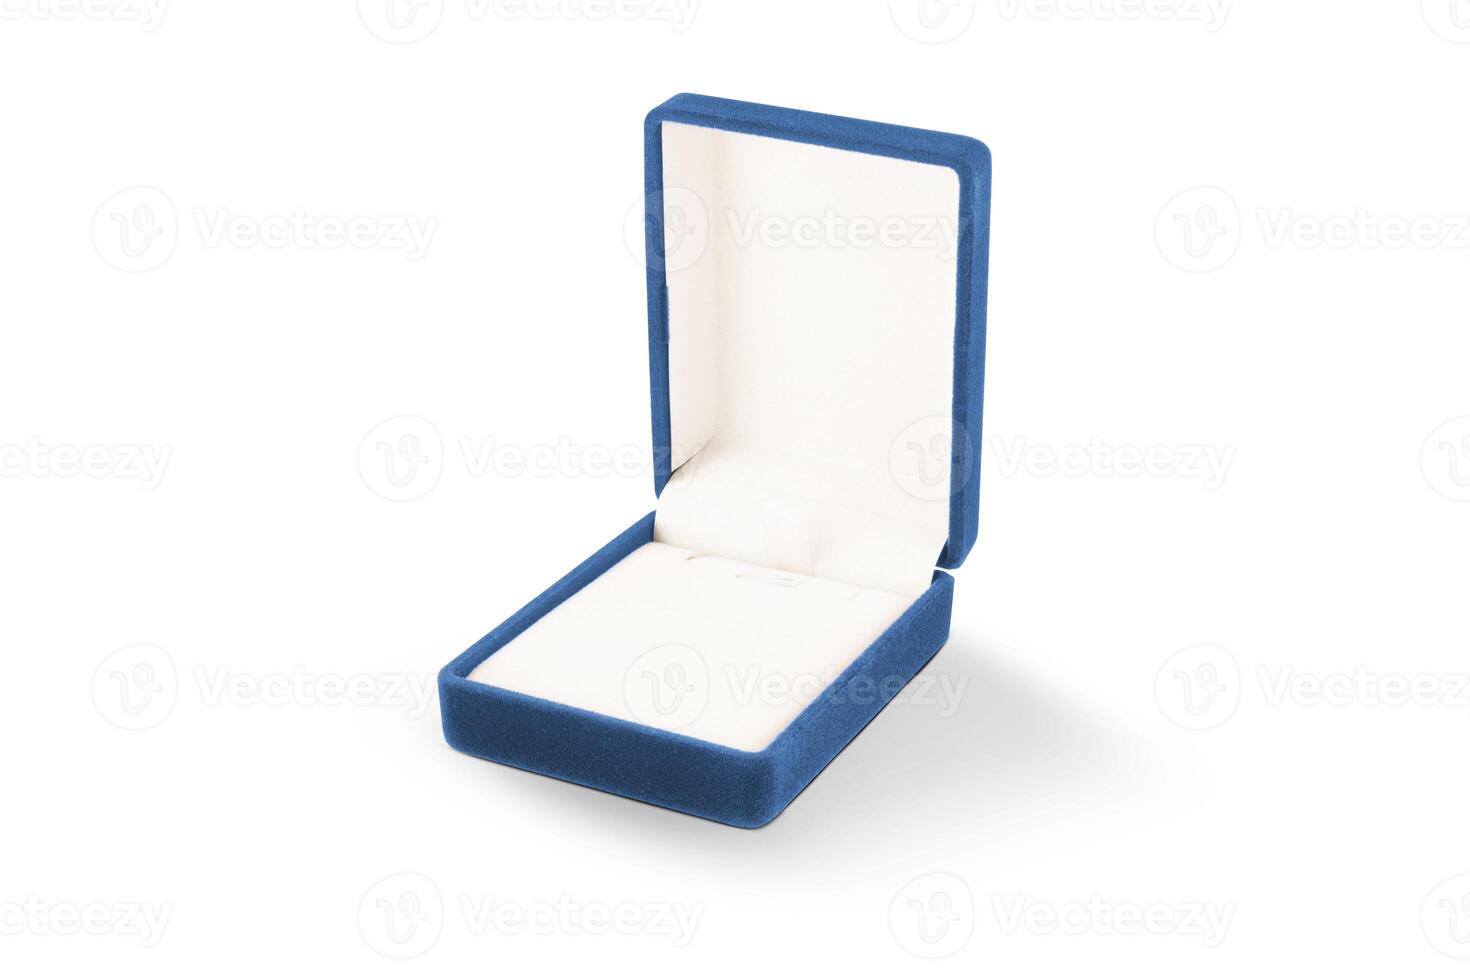 Blau Geschenk Box zum Schmuck isoliert auf Weiß Hintergrund foto